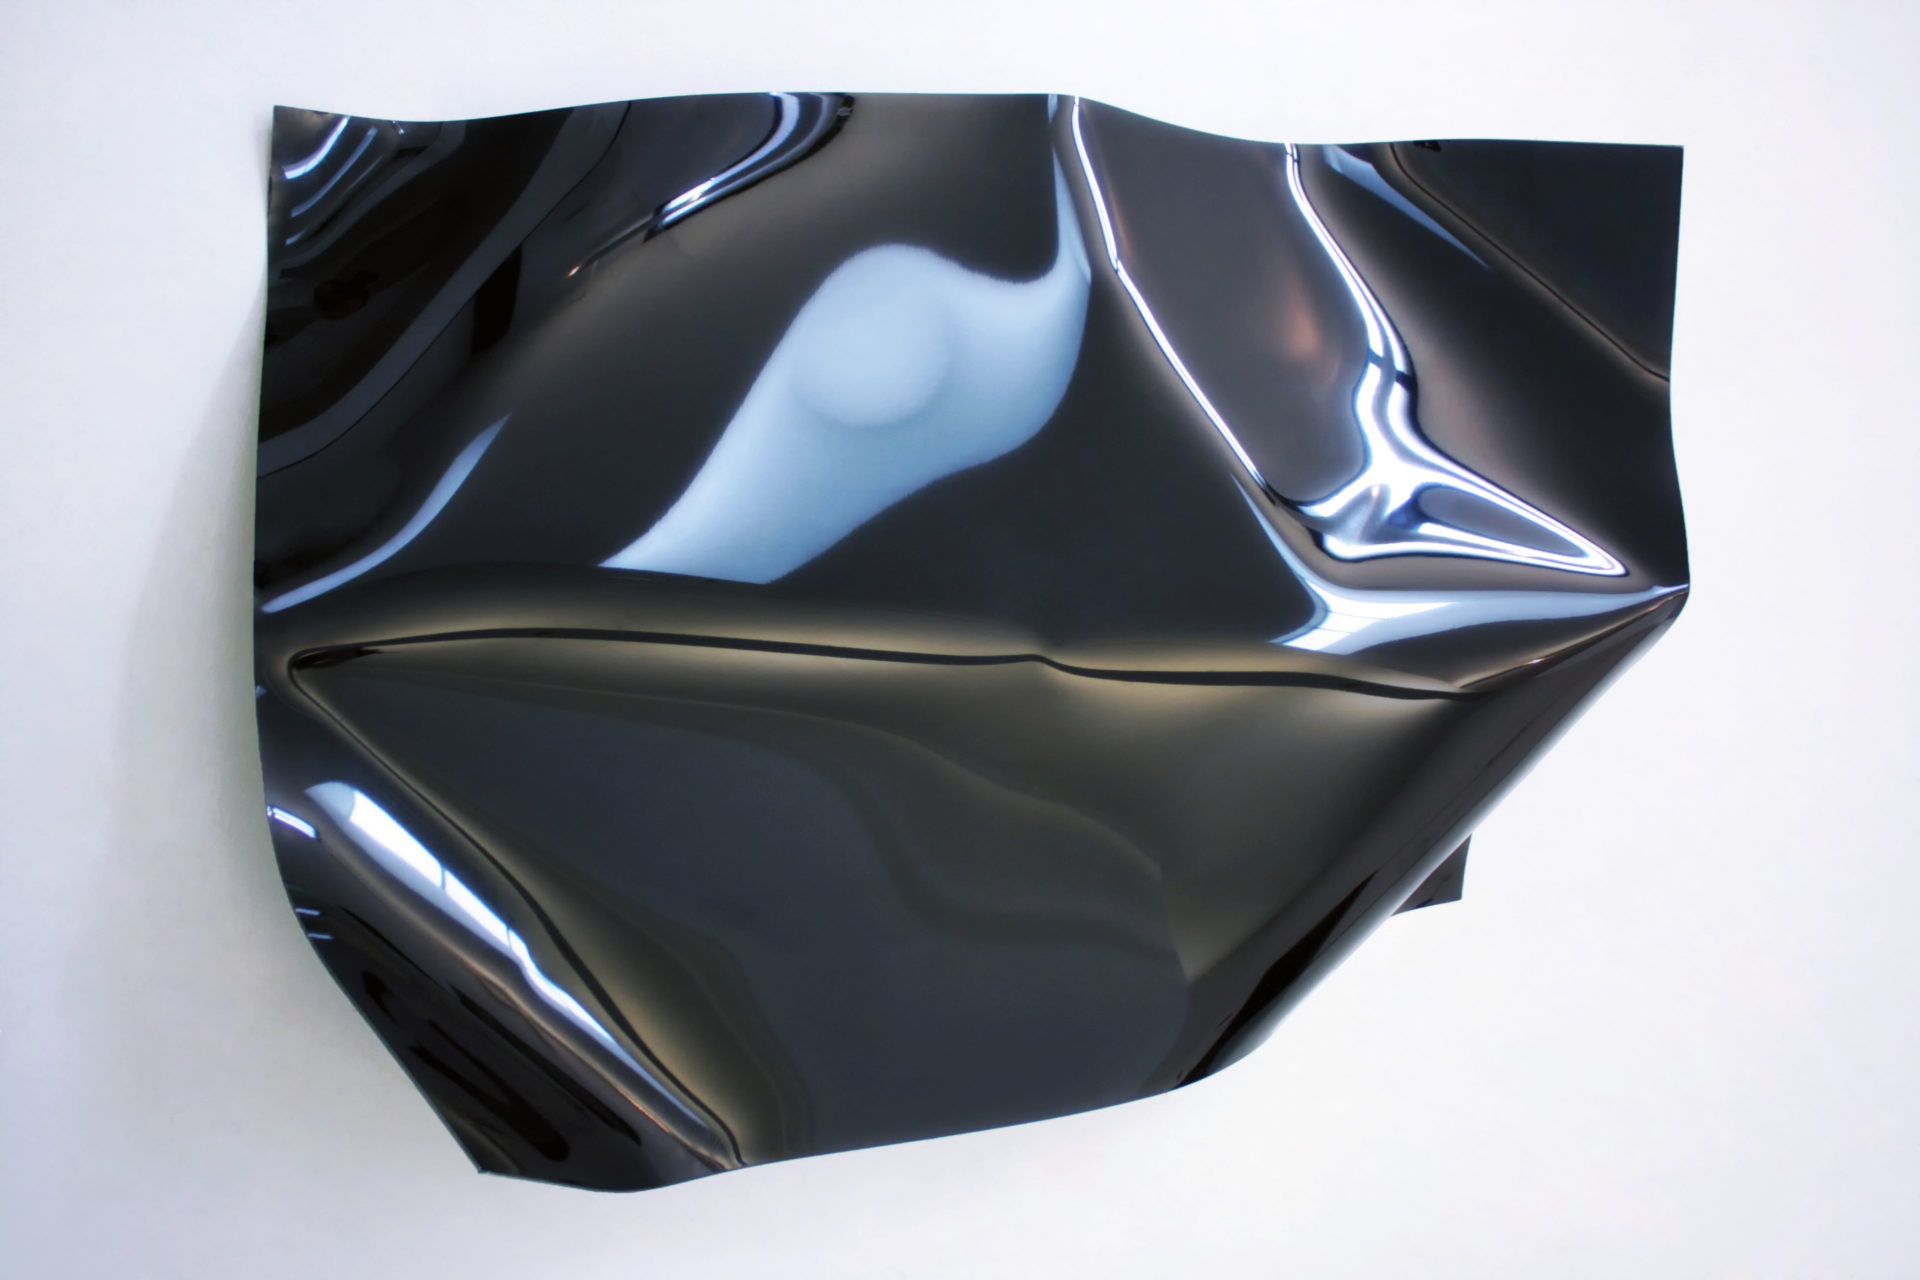 Bend Fold Drape n°1, Plaque d'acier et laque noire, 60 x 100 cm, 2009